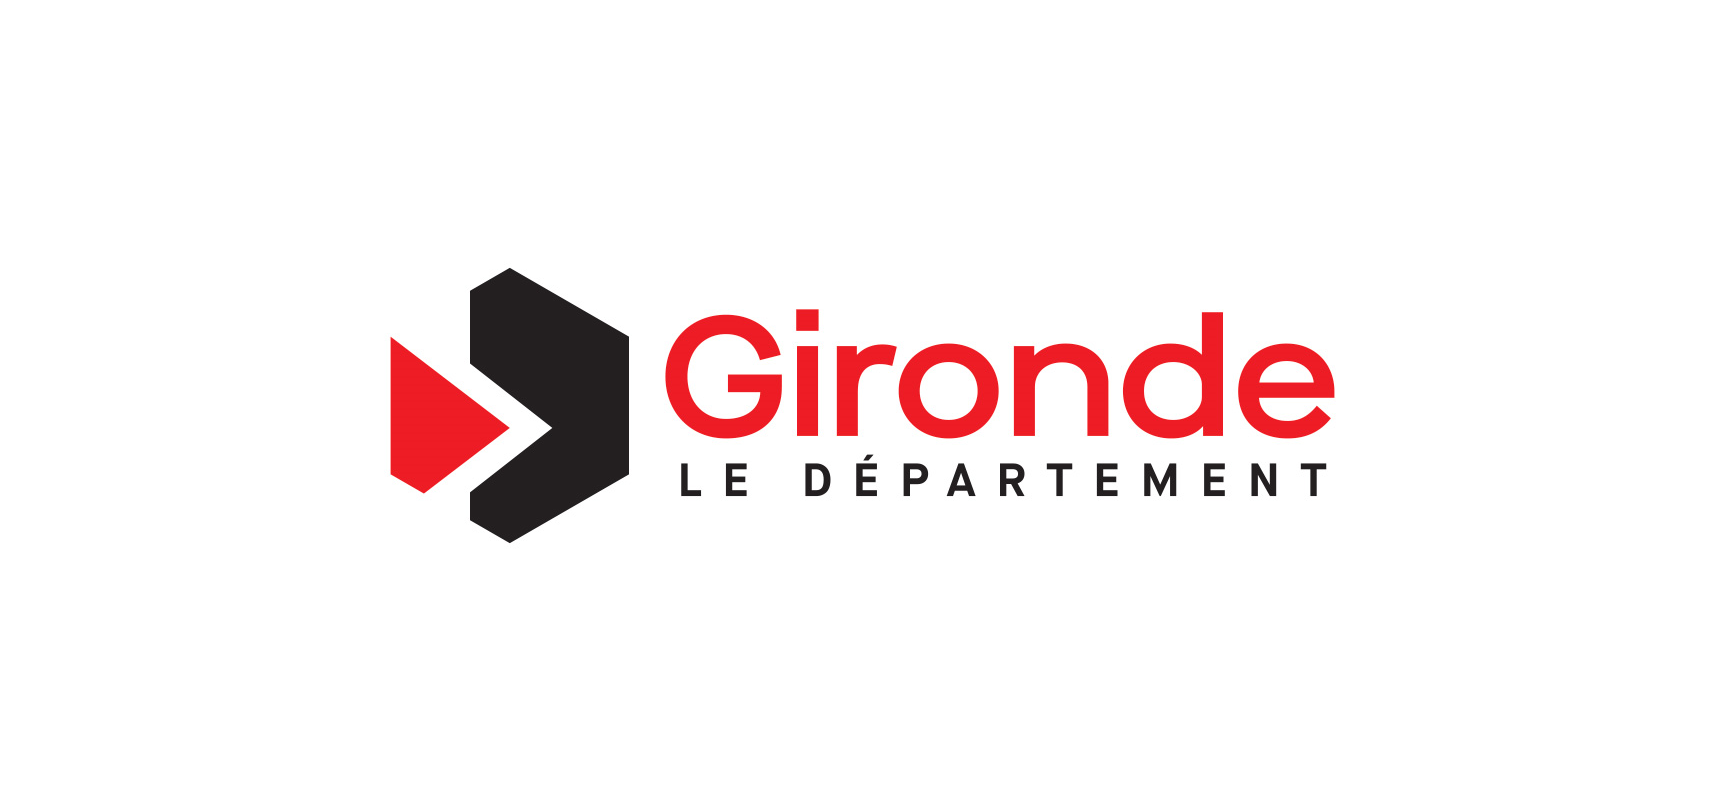 Gironde, Le département